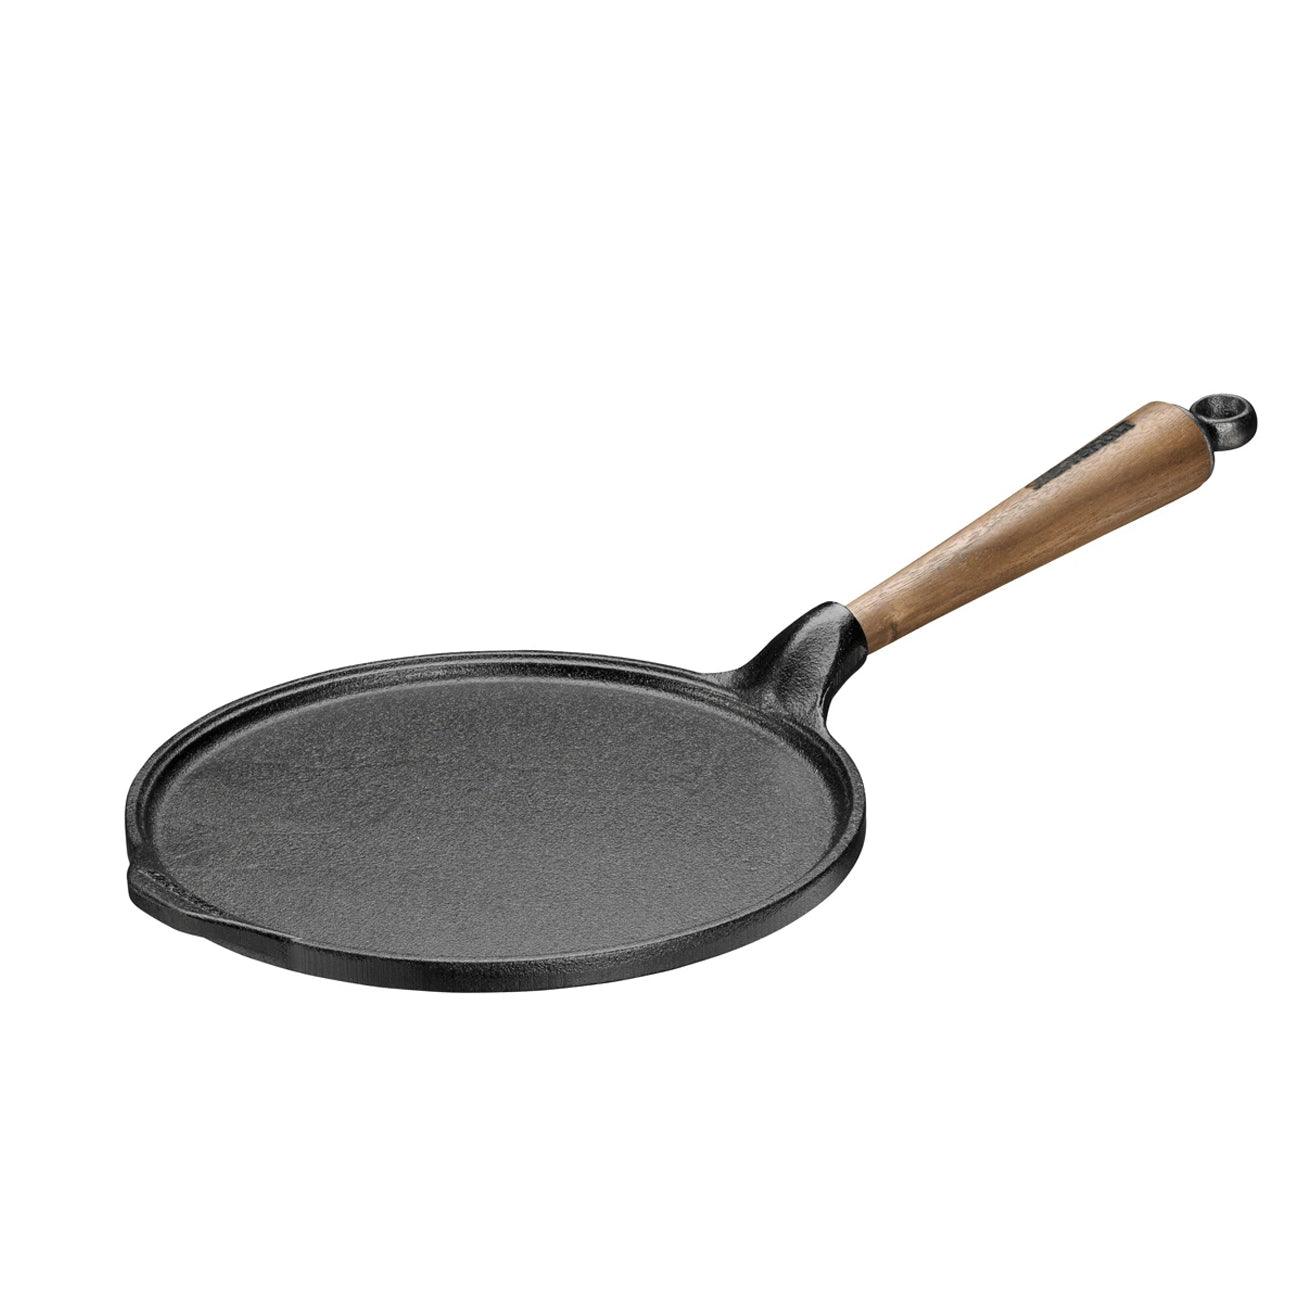 [Skeppshult] Pancake Pan, 23cm w/ Walnut Handle - HANKOOK